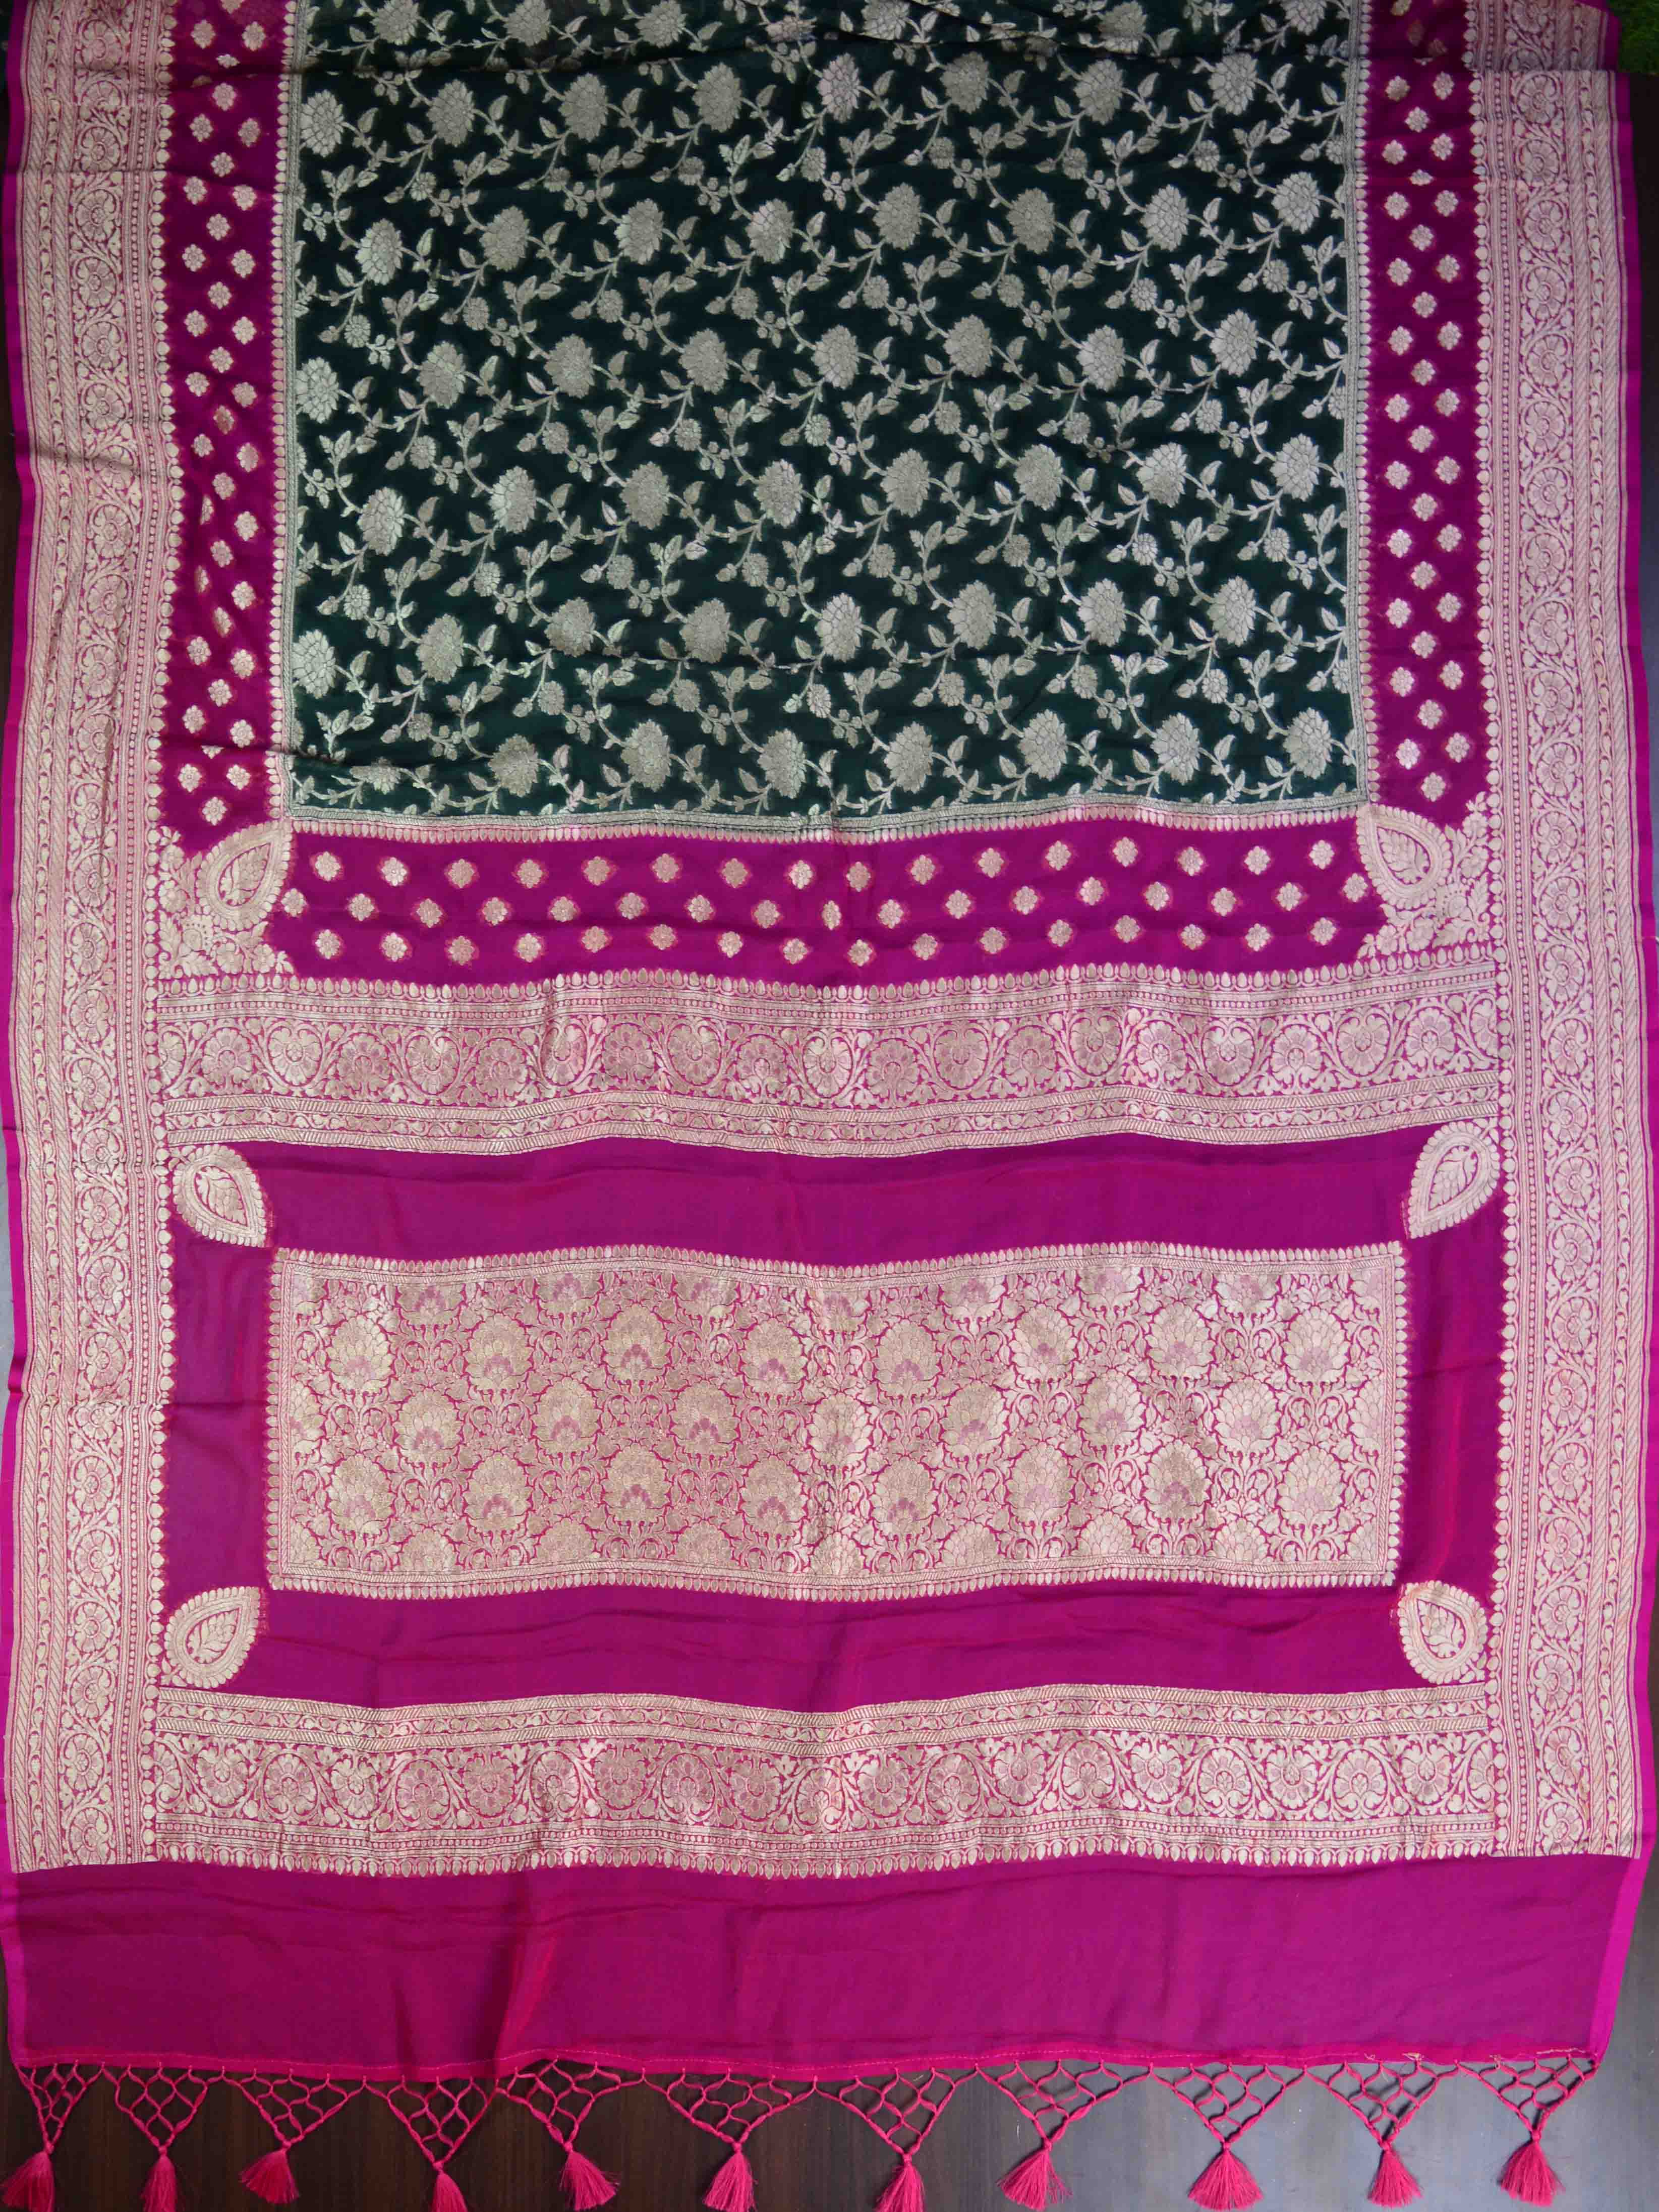 Banarasee Pure Khaddi Chiffon Silk Sari With Buta Design & Contrast Border-Forest Green & Pink